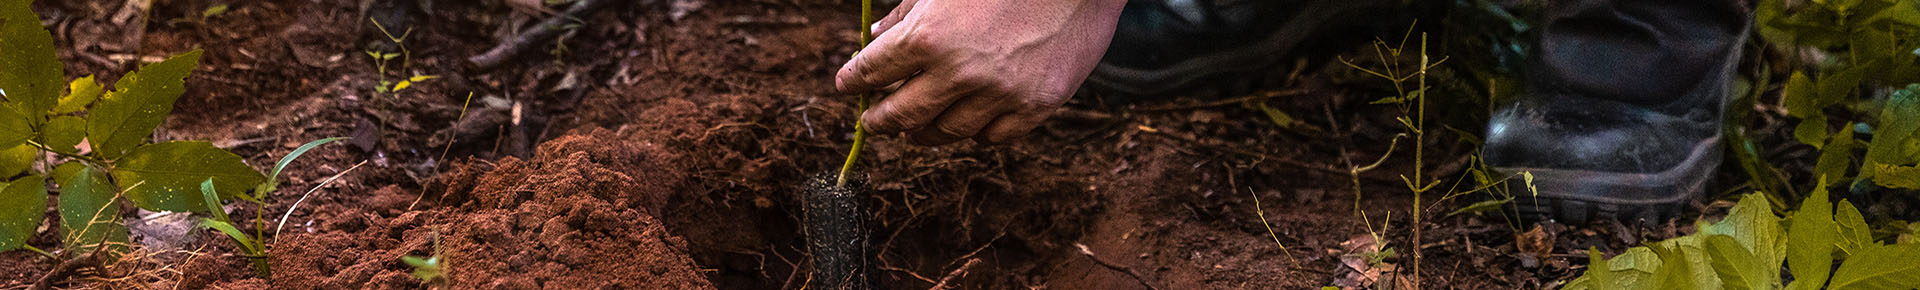 Verdade ou mito: plantação de eucalipto prejudica o solo?